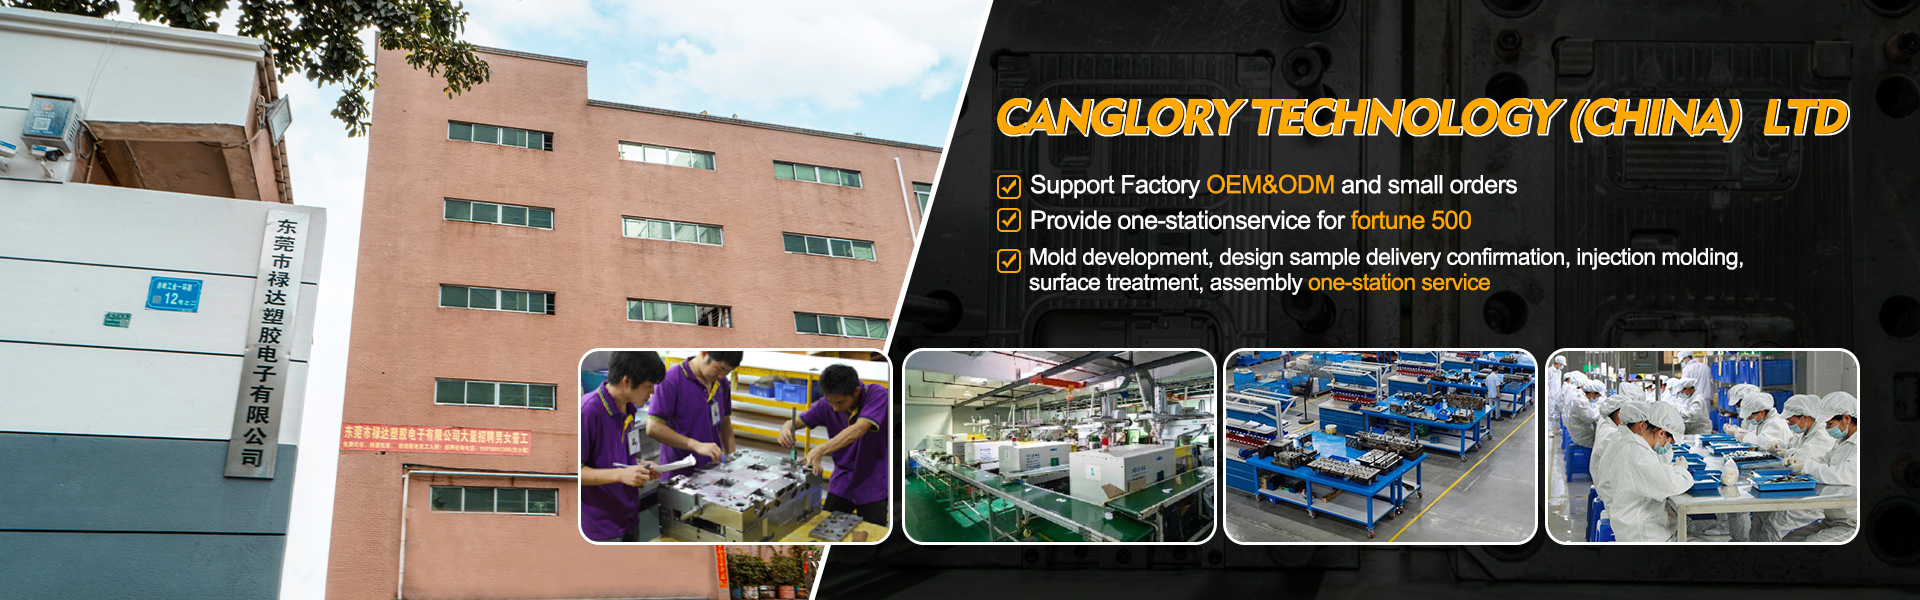 Maison - Moulage, injection, fabricant d'équipement d'origine|CANGLORY Technology (China) Ltd